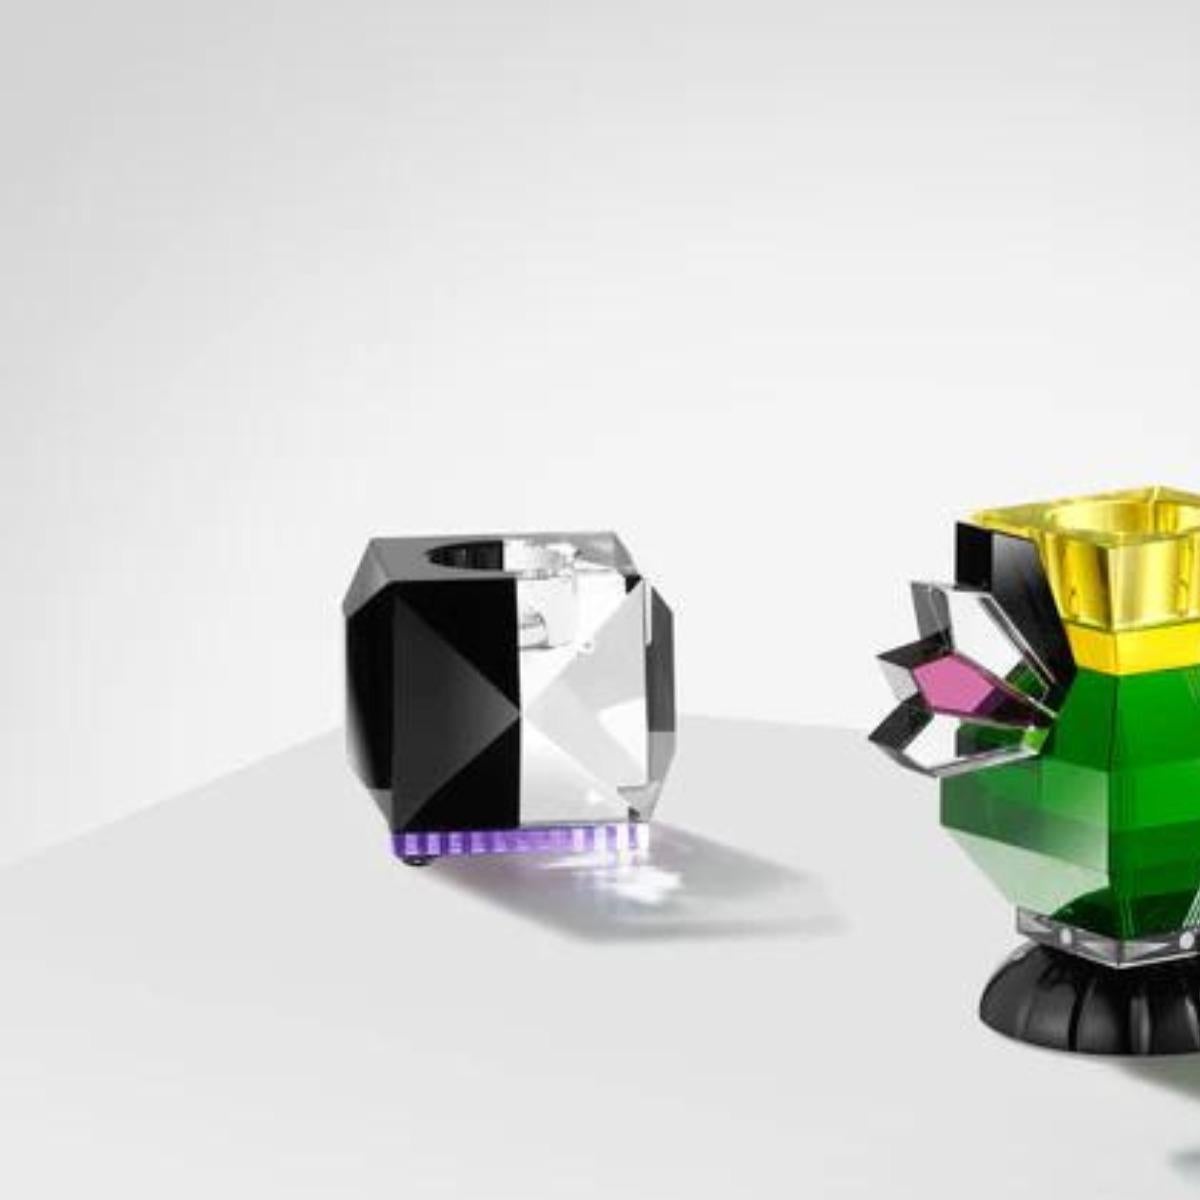 Kristallkerzenhalter, Modell OPH II, 21. Jahrhundert.

Kristallkerzenhalter in zwei Farben erhältlich: Transparent/Braun/Gelb, Transparent/Bernstein, Transparent/Rosa und Transparent/Schwarz. Jeder Kristall-Kerzenhalter ist ein Kunstwerk für sich